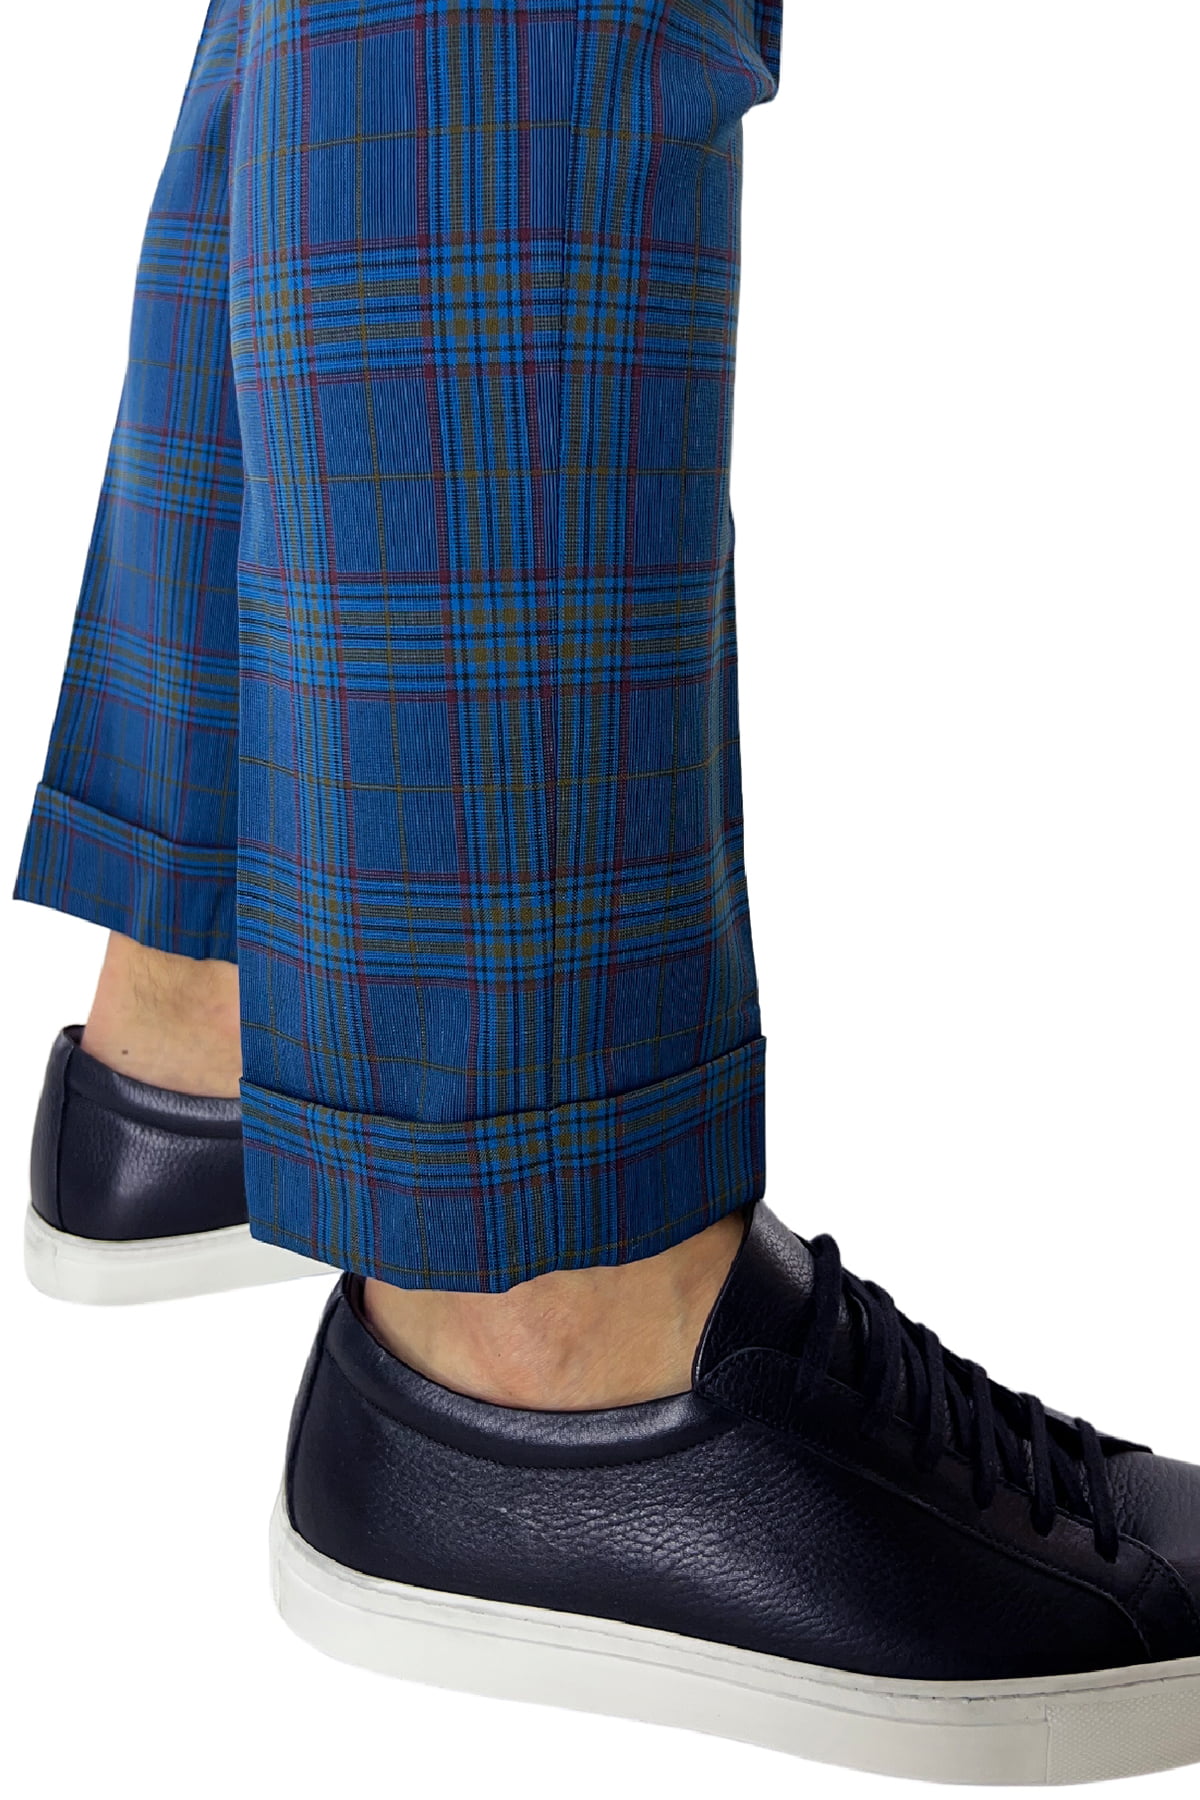 Pantalone uomo scozzese blu tasca america made in italy